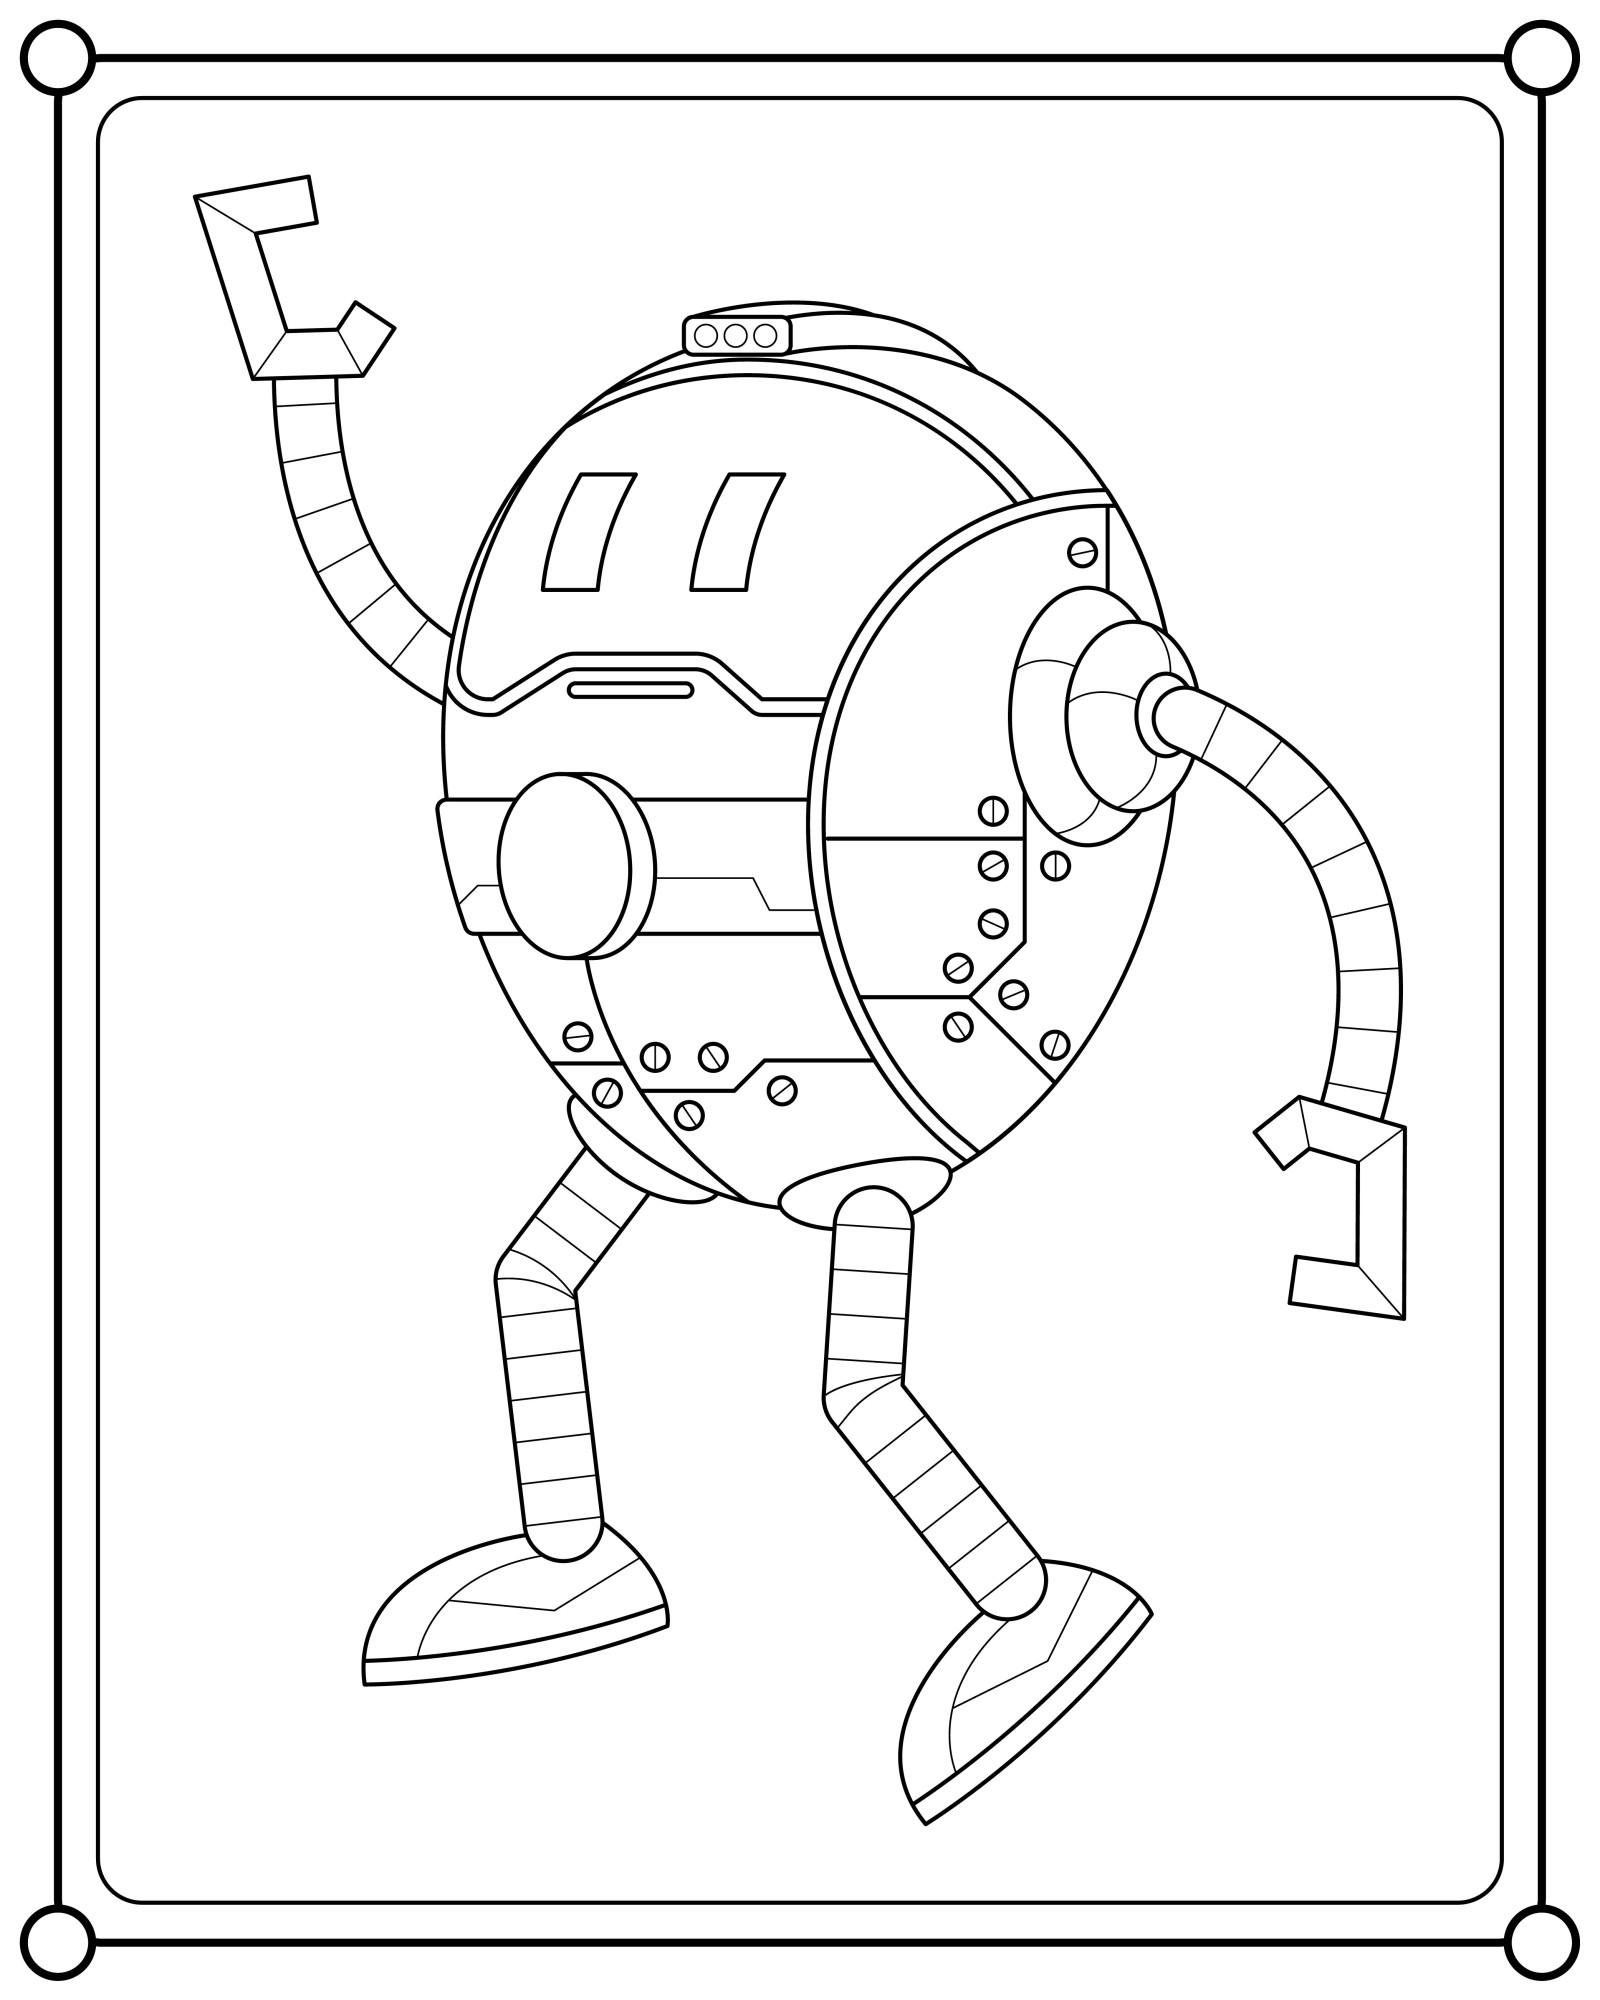 Раскраска для детей: симпатичный робот «Астероид»